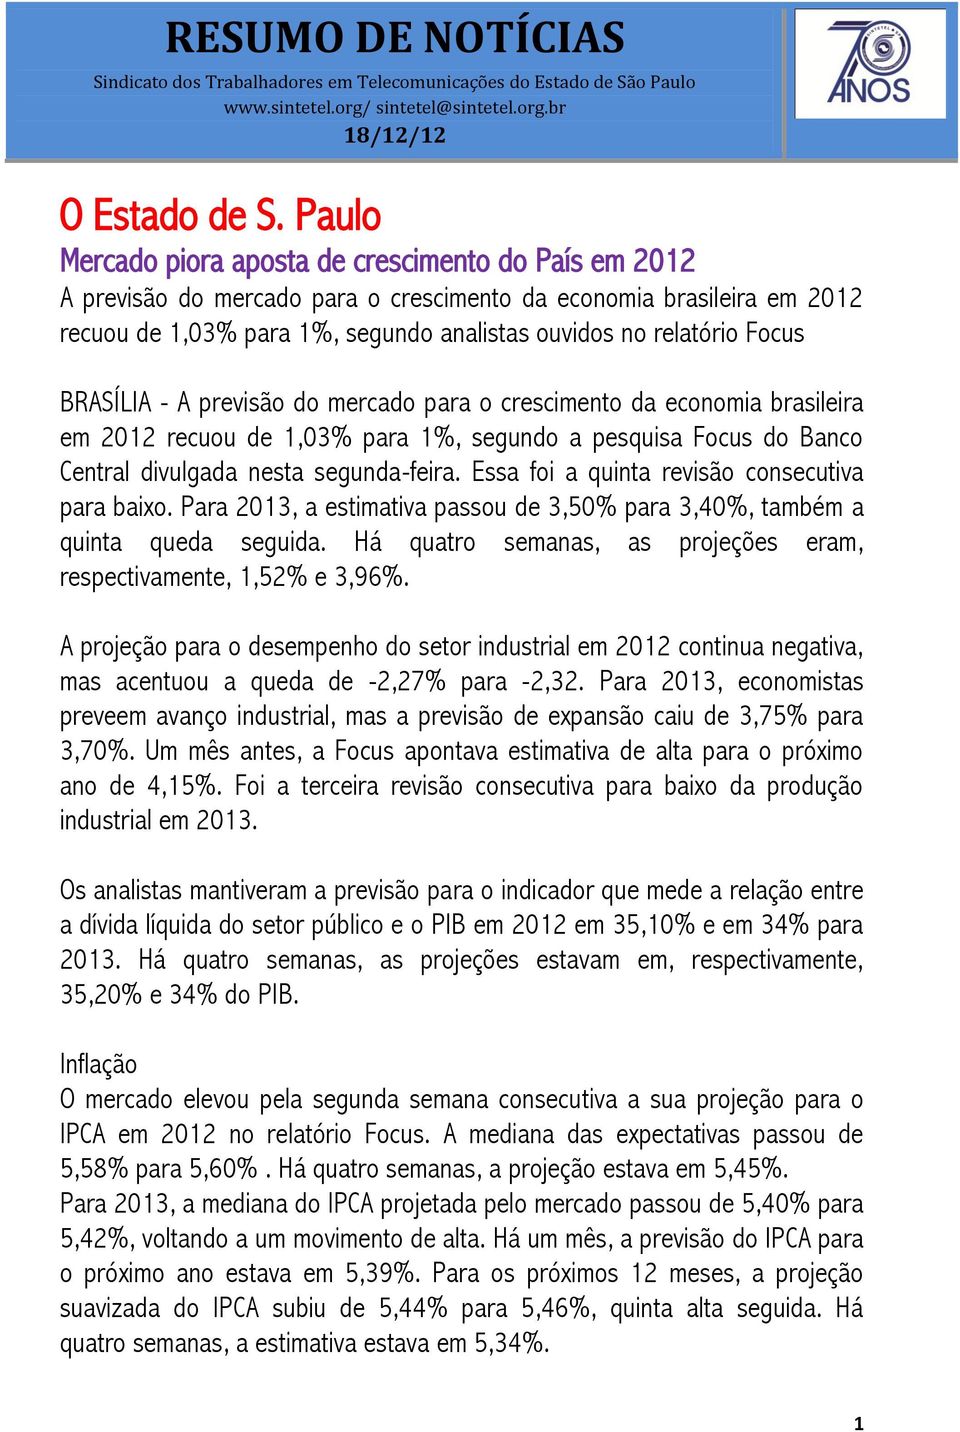 BRASÍLIA - A previsão do mercado para o crescimento da economia brasileira em 2012 recuou de 1,03% para 1%, segundo a pesquisa Focus do Banco Central divulgada nesta segunda-feira.